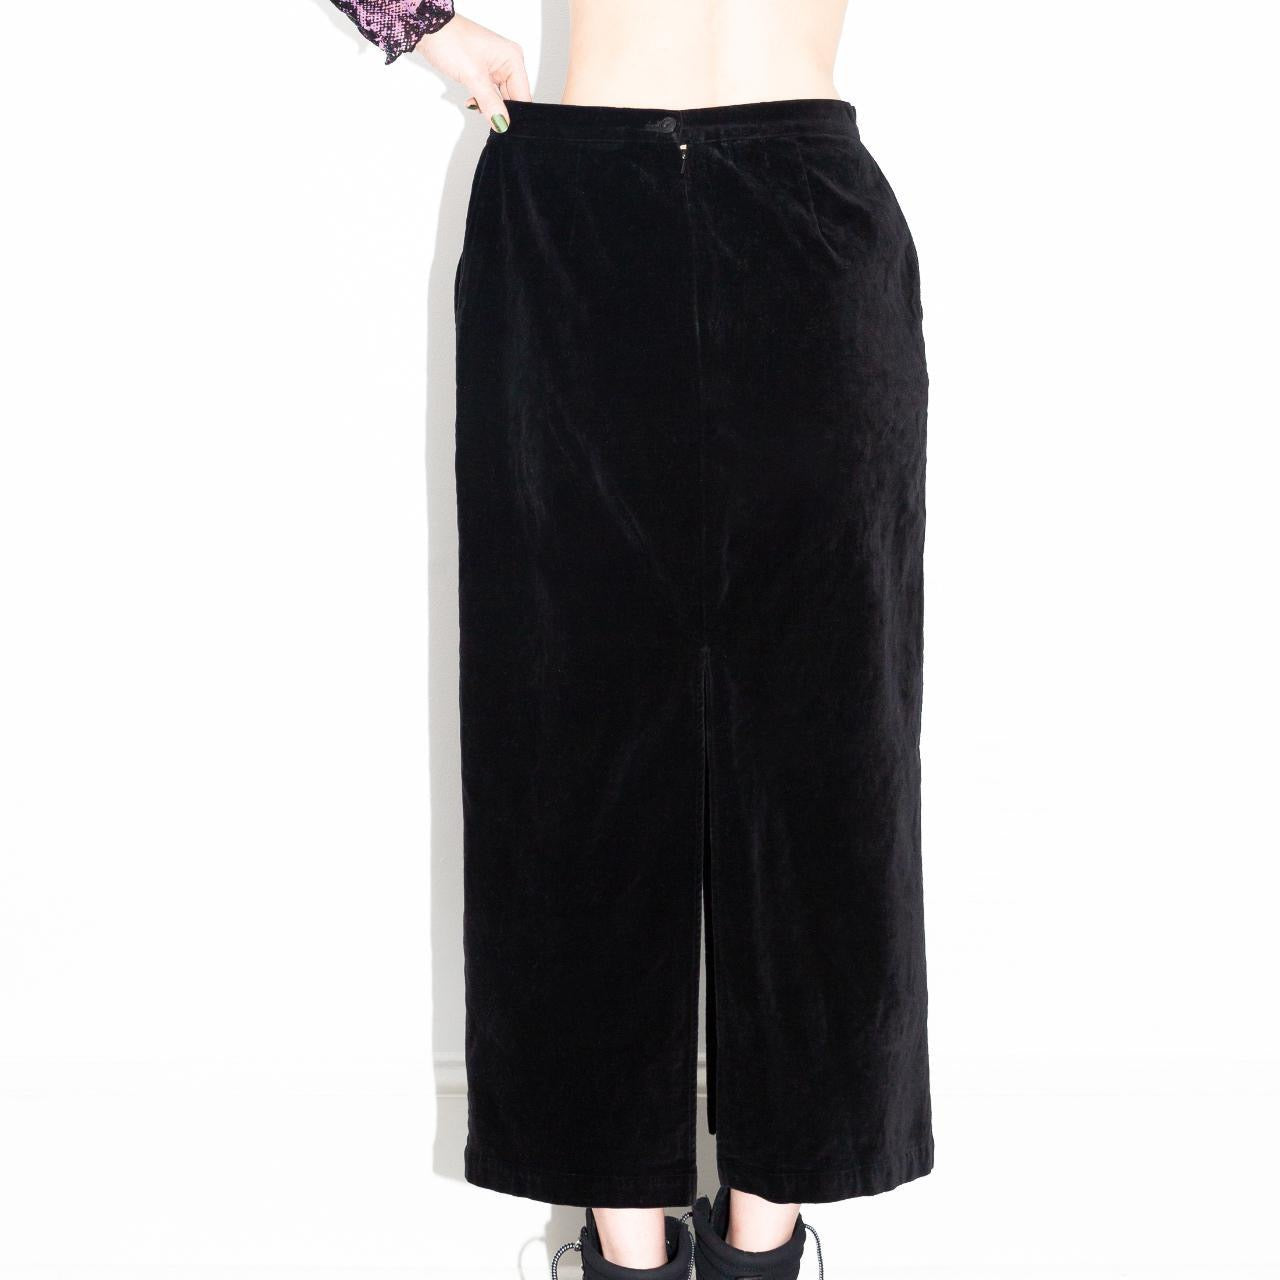 Vintage 90s Black Velvet Slit Skirt